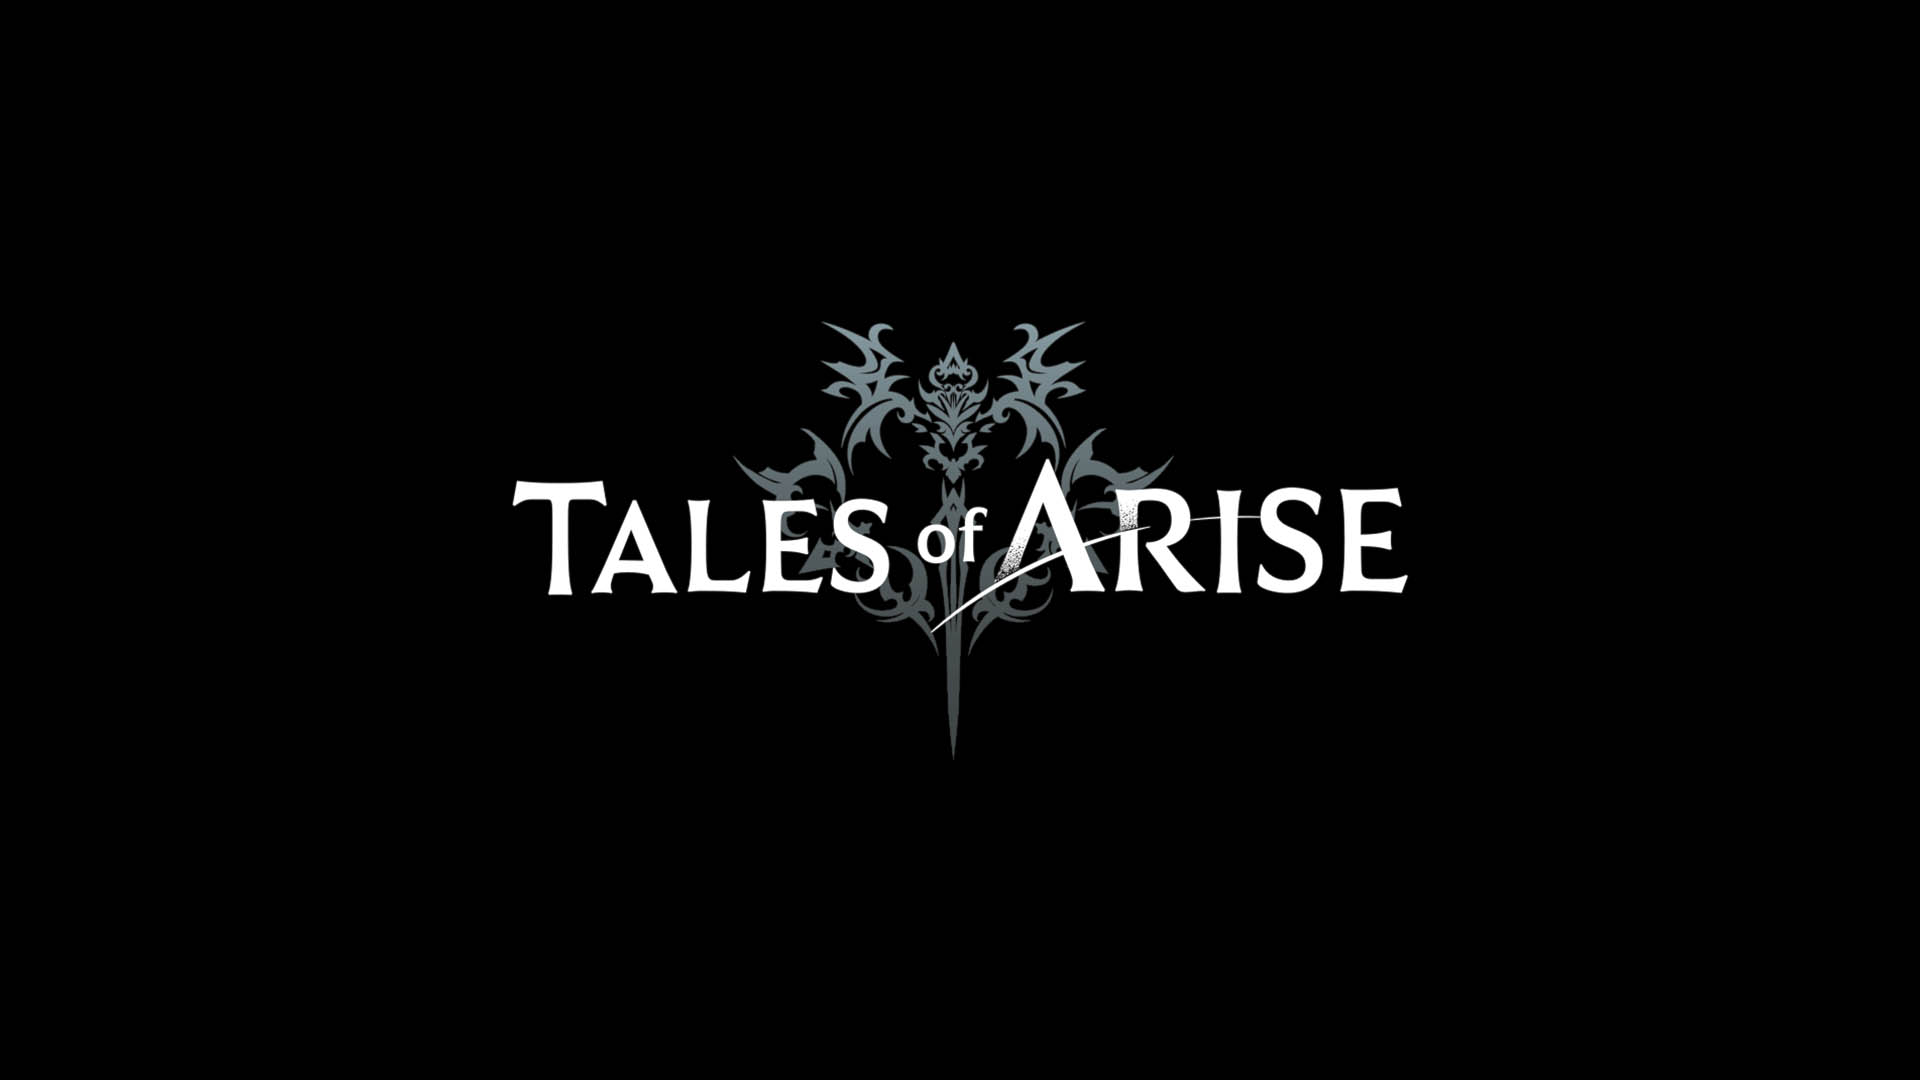 Trofeos de Tales of Arise